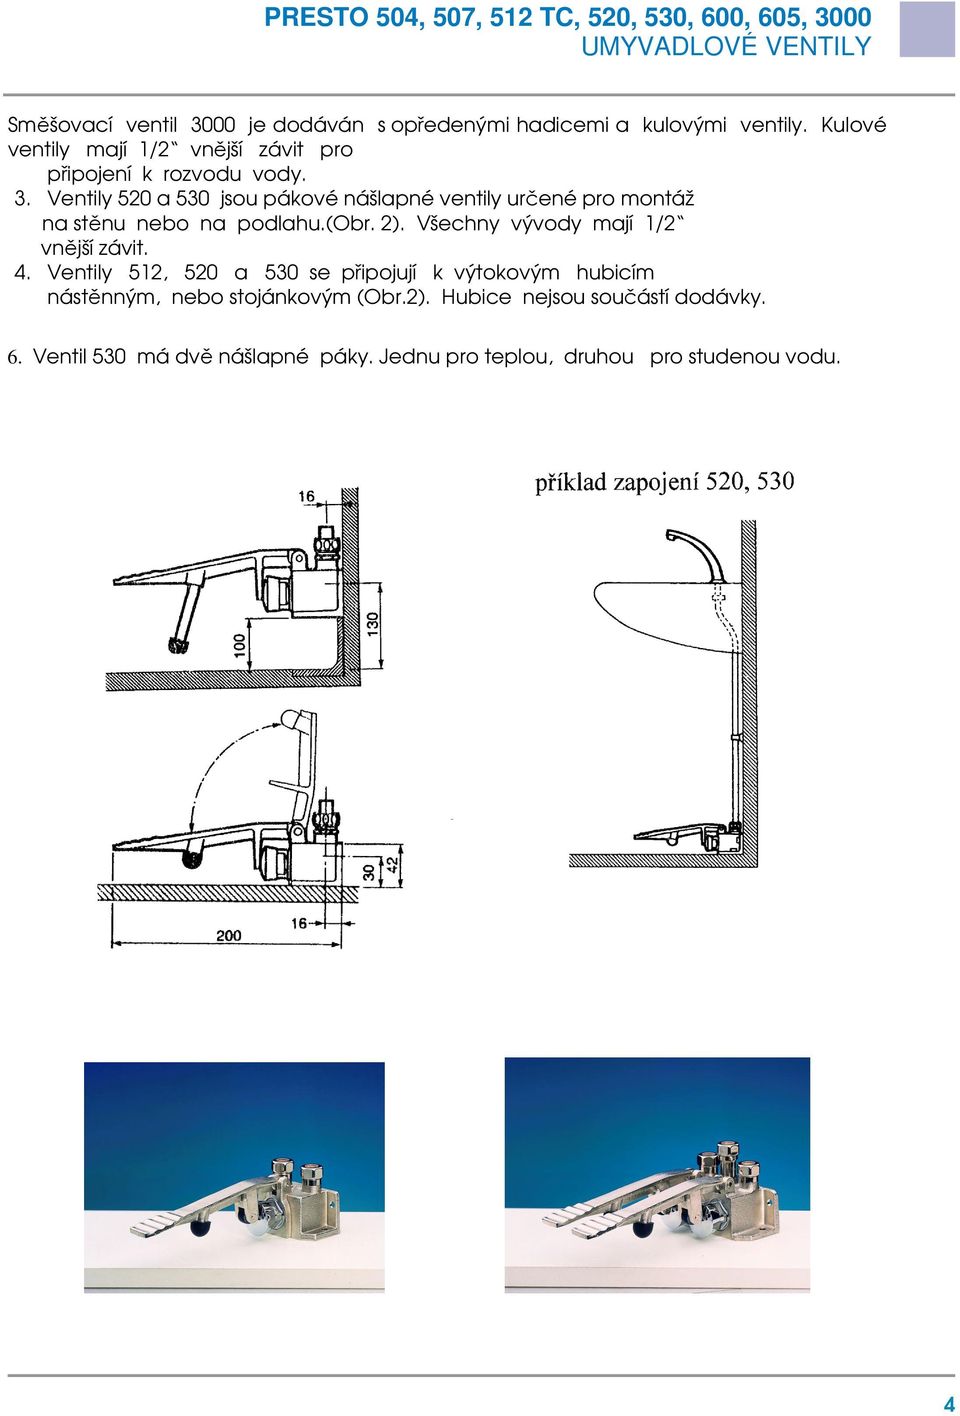 Ventily 520 a 530 jsou pákové nášlapné ventily určené pro montáž na stěnu nebo na podlahu.(obr. 2).